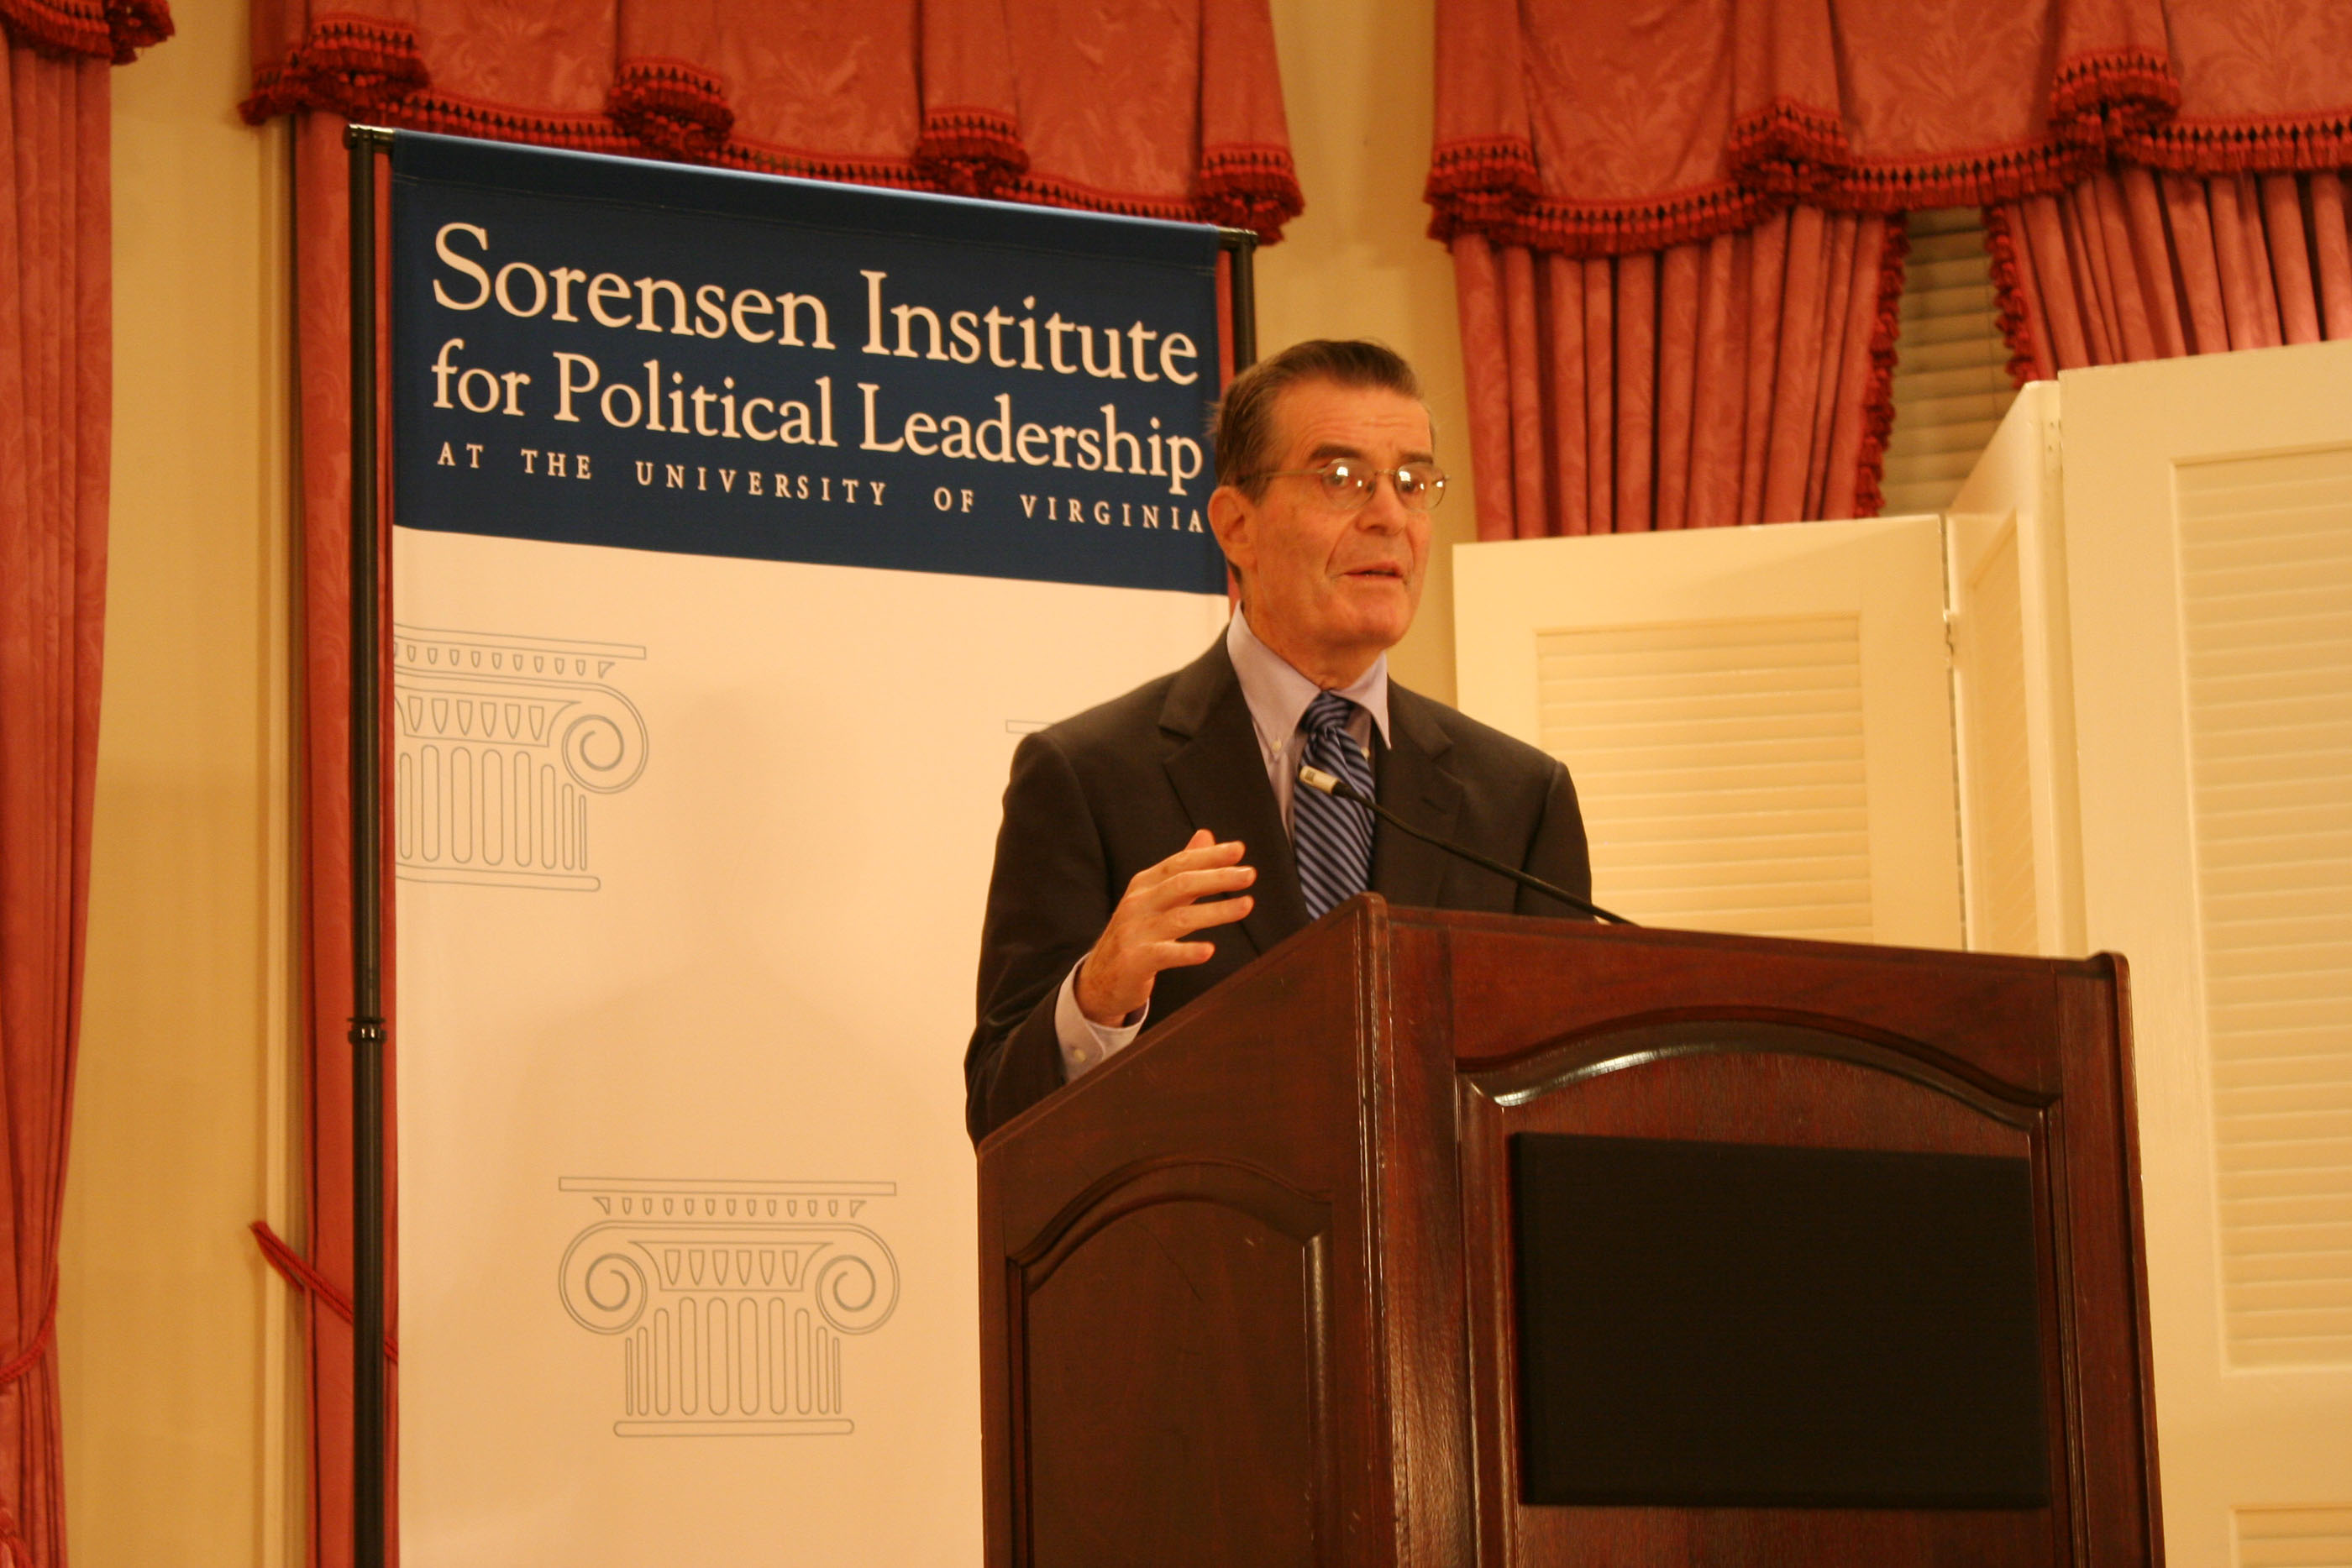 Theodore Sorensen speaking at a podium